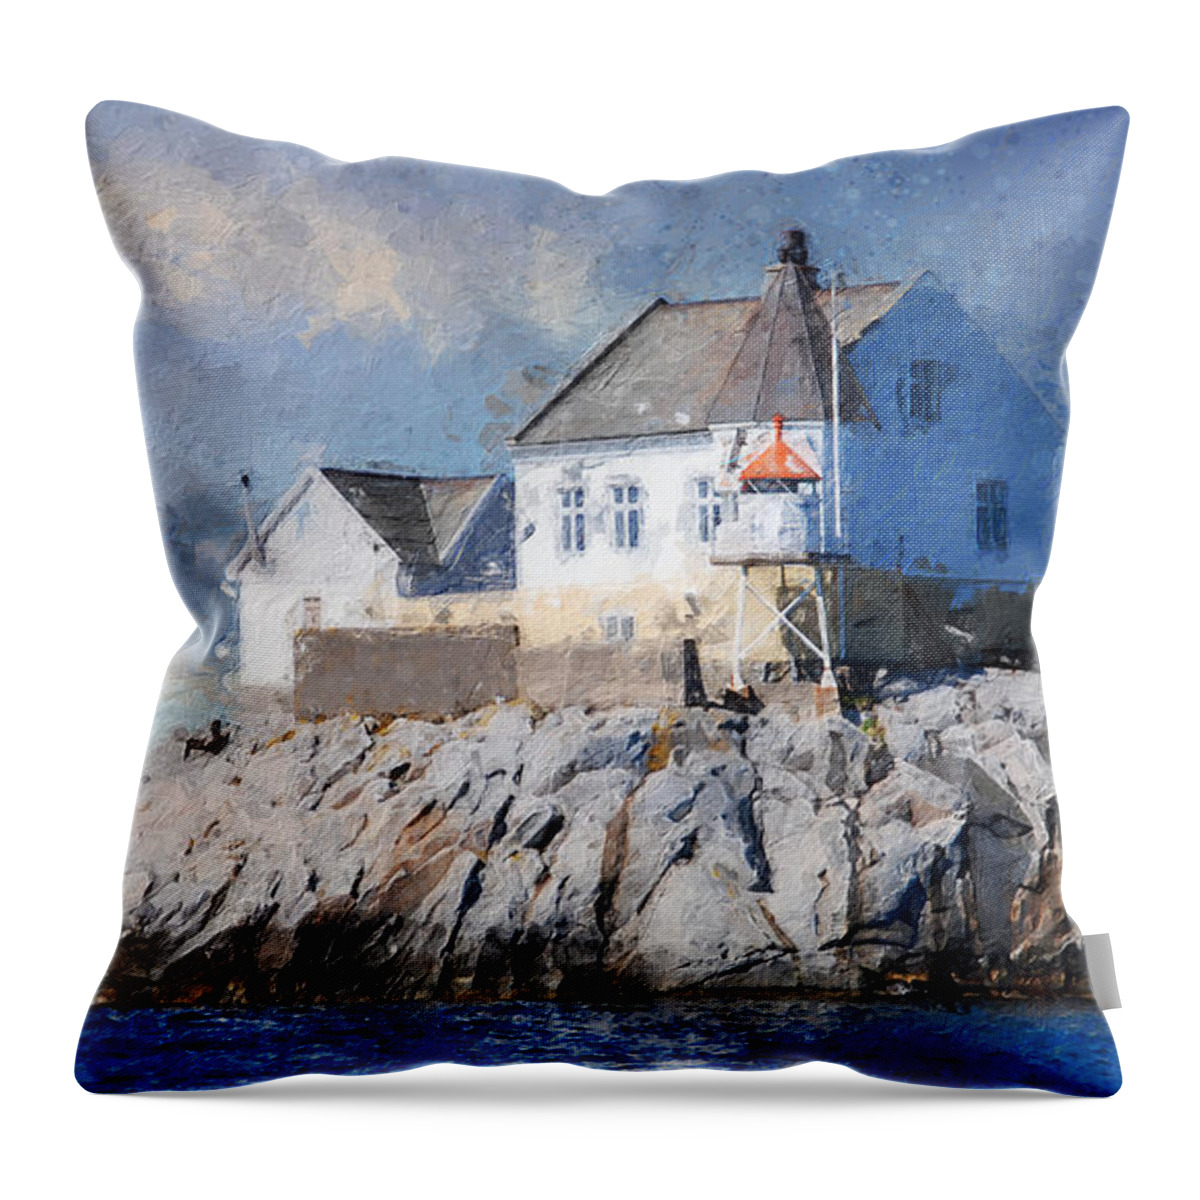 Lighthouse Throw Pillow featuring the digital art Saltholmen lighthouse by Geir Rosset